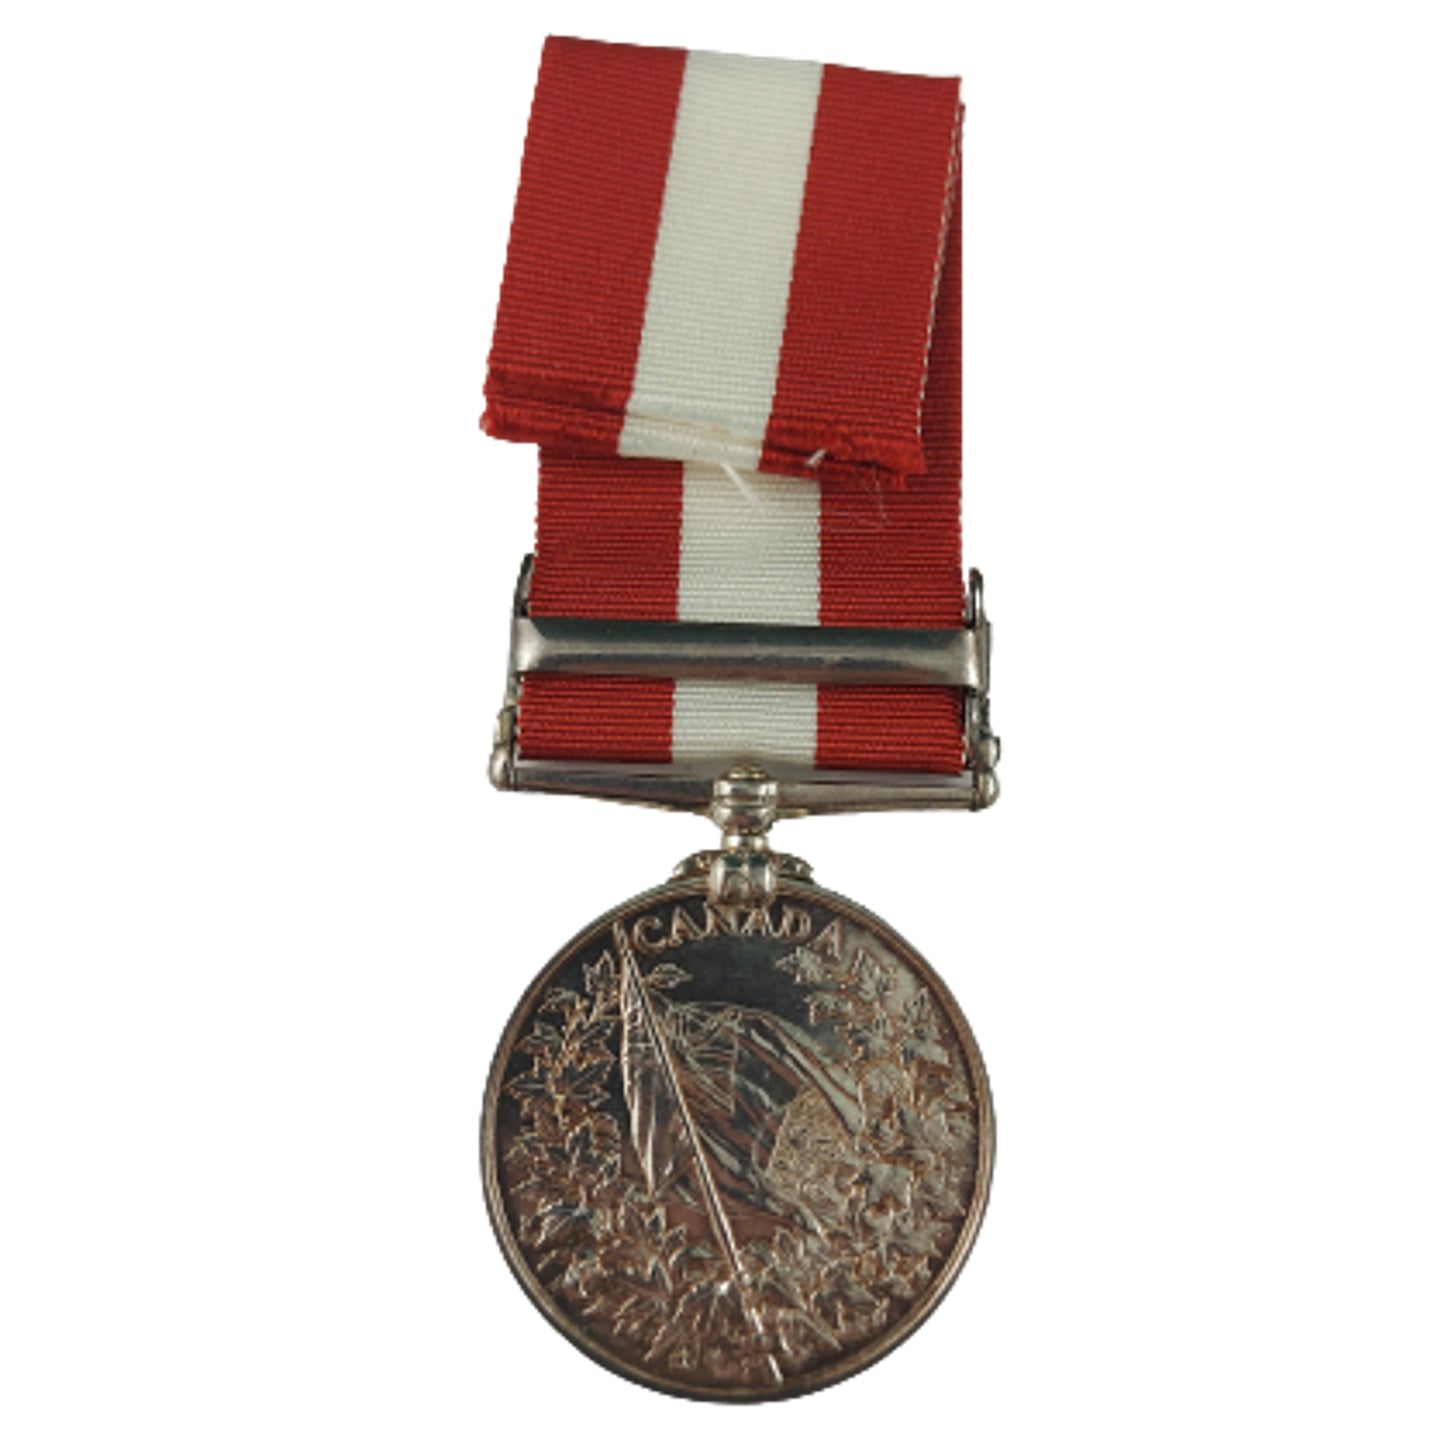 Pre-WW1 Canadian General Service Medal Fenian Raid 1866 - 13th Battalion